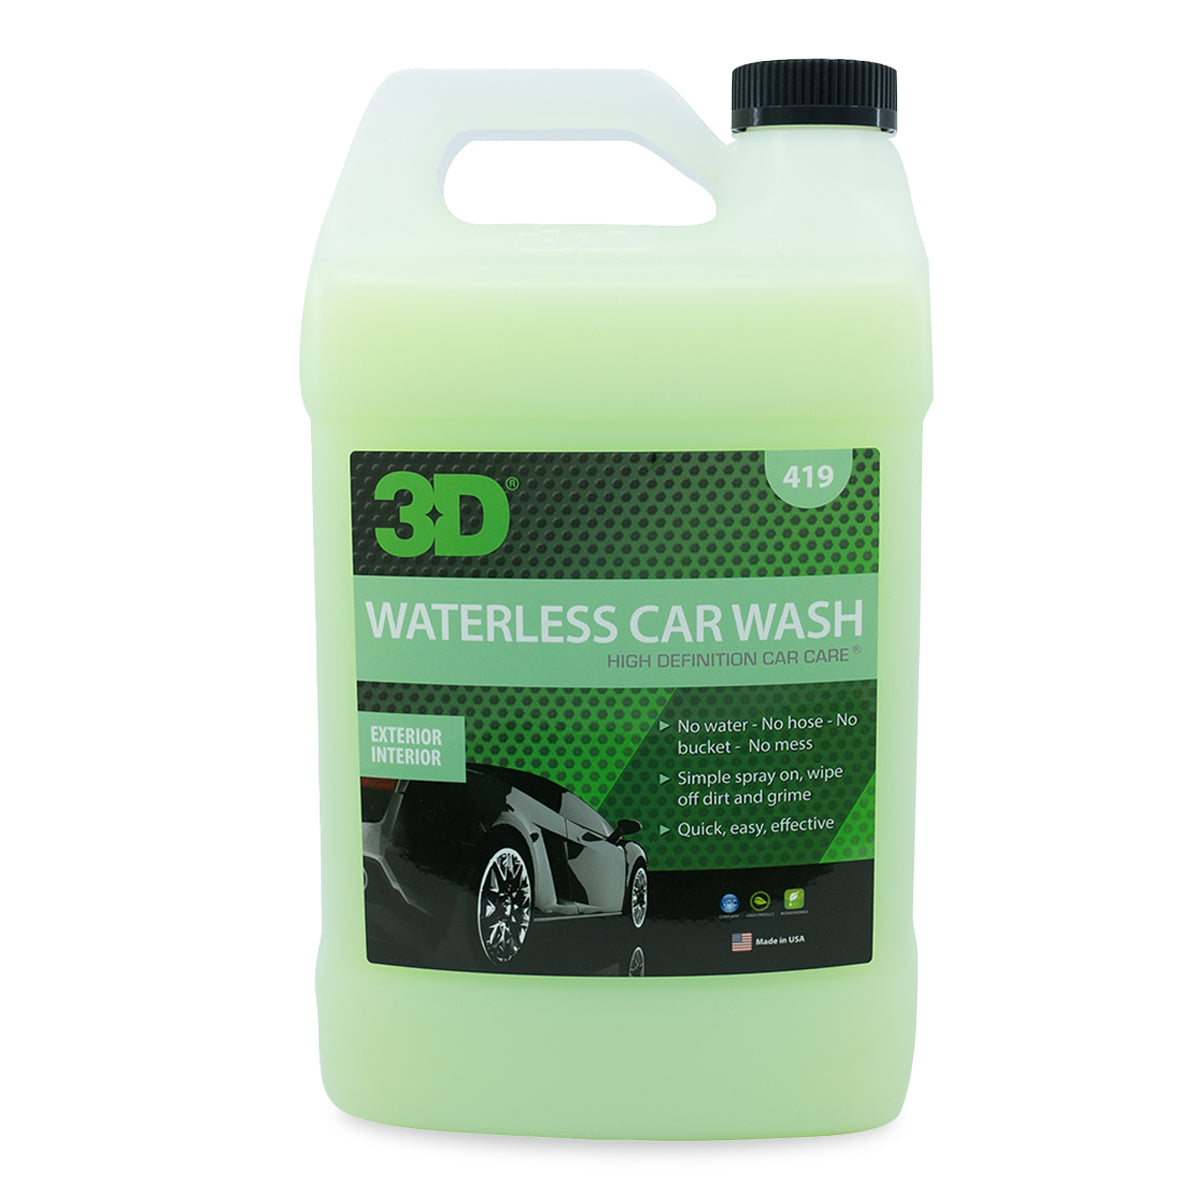 Garden hose - Car Wash & Detailing chemicals